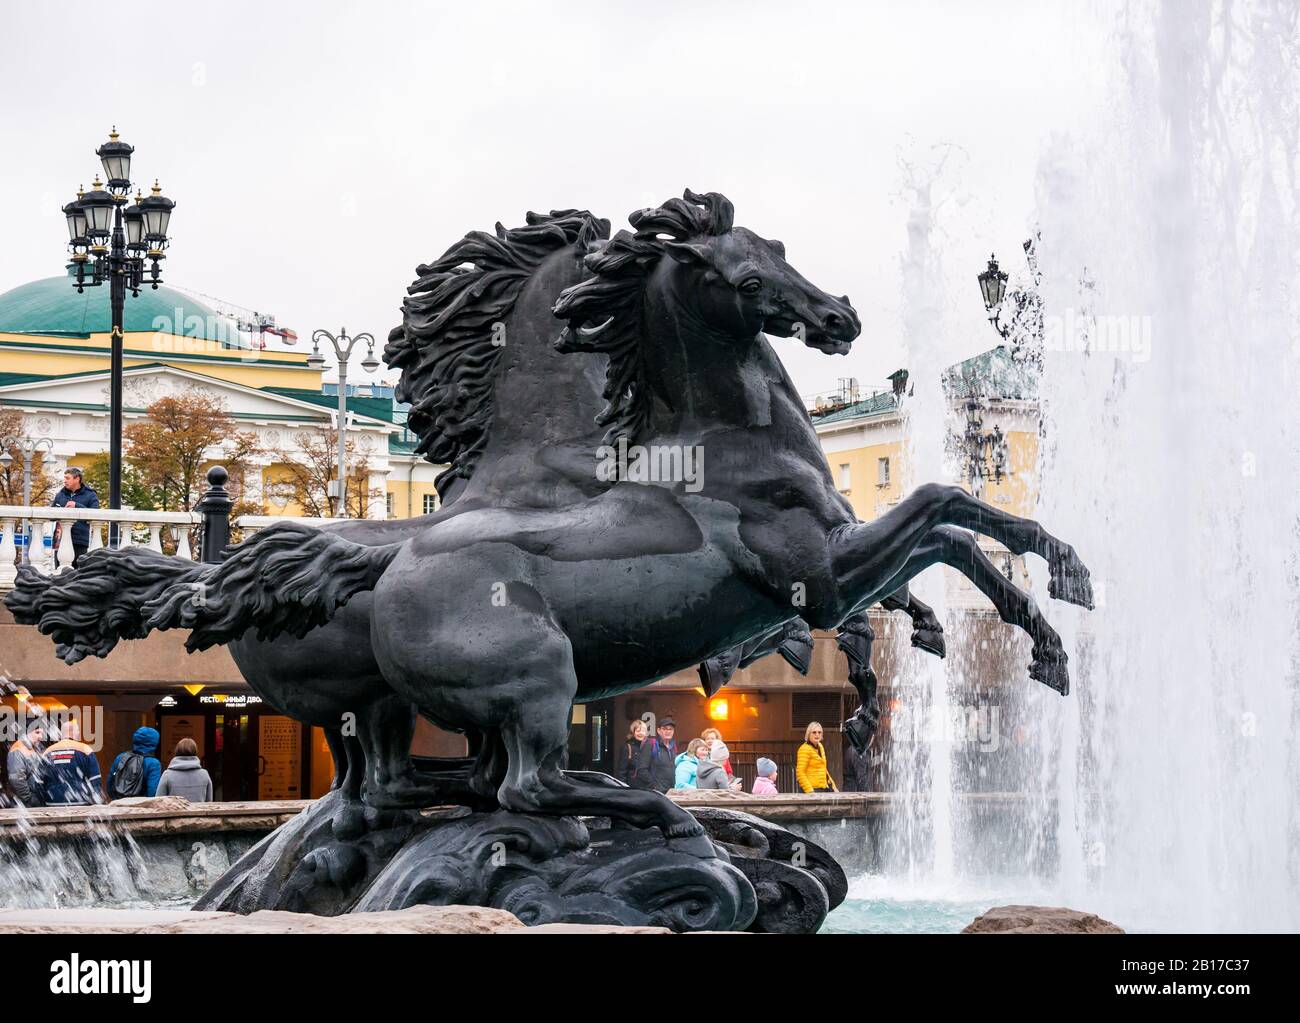 Four Seasons Fountain of Rearing Horses von Zurab Tseretelis, Alexander Gardens, Moskau, Russische Föderation Stockfoto